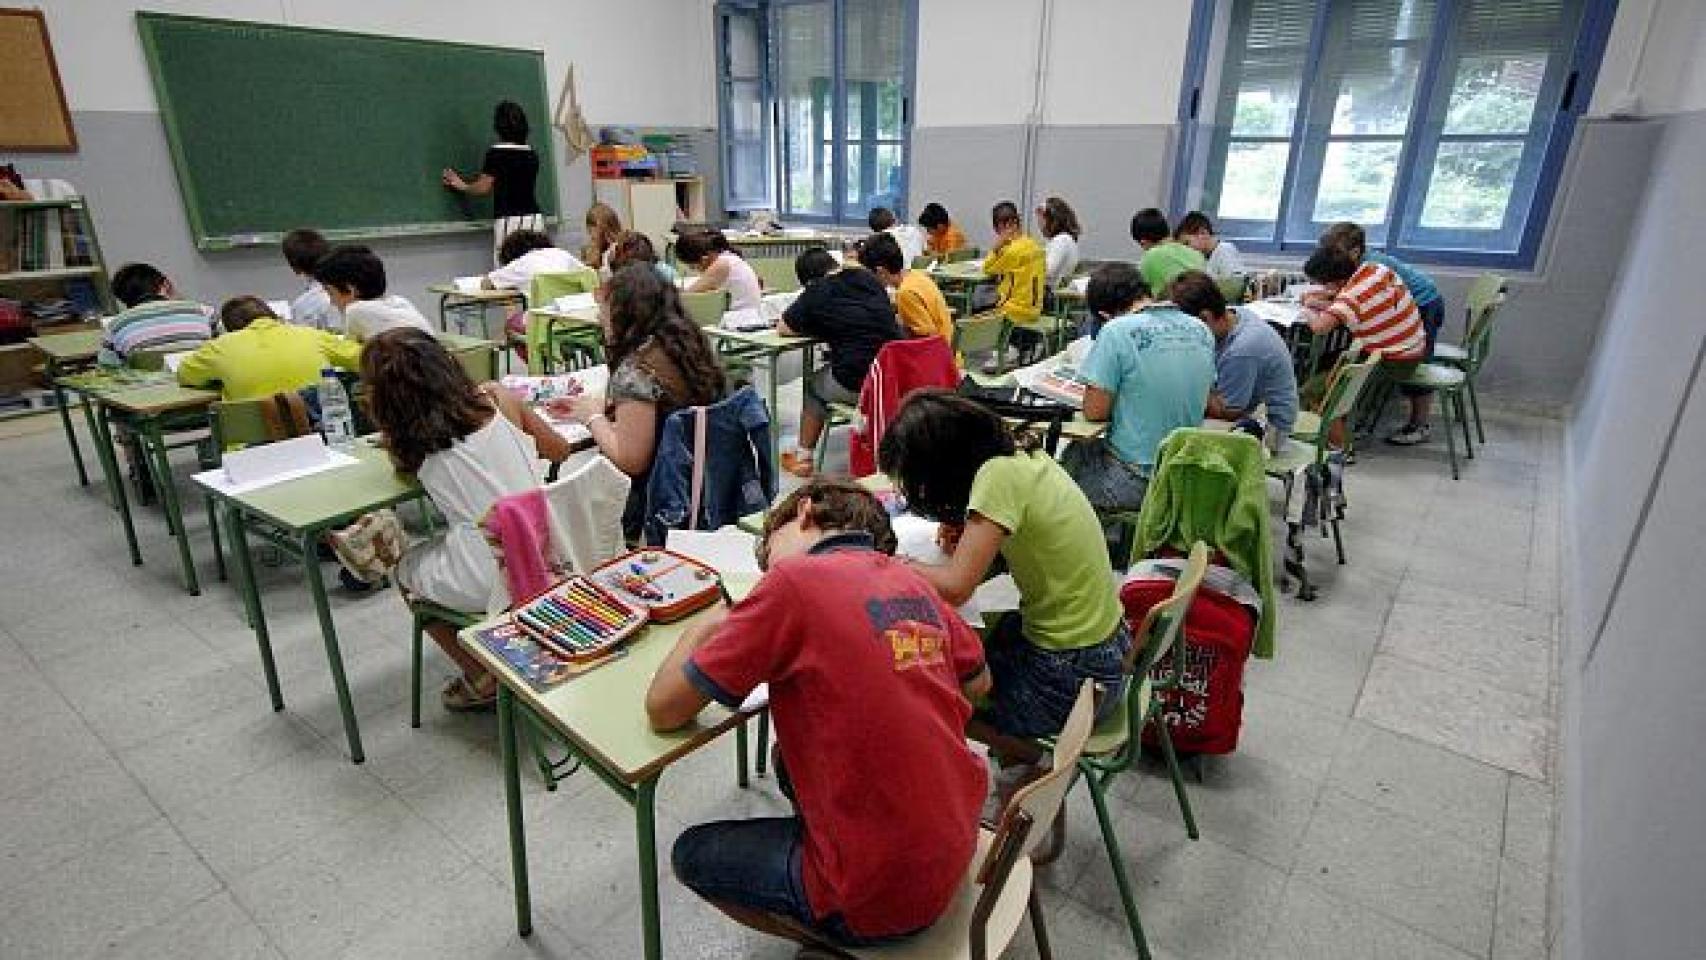 Estudiantes en una clase durante su jornada escolar